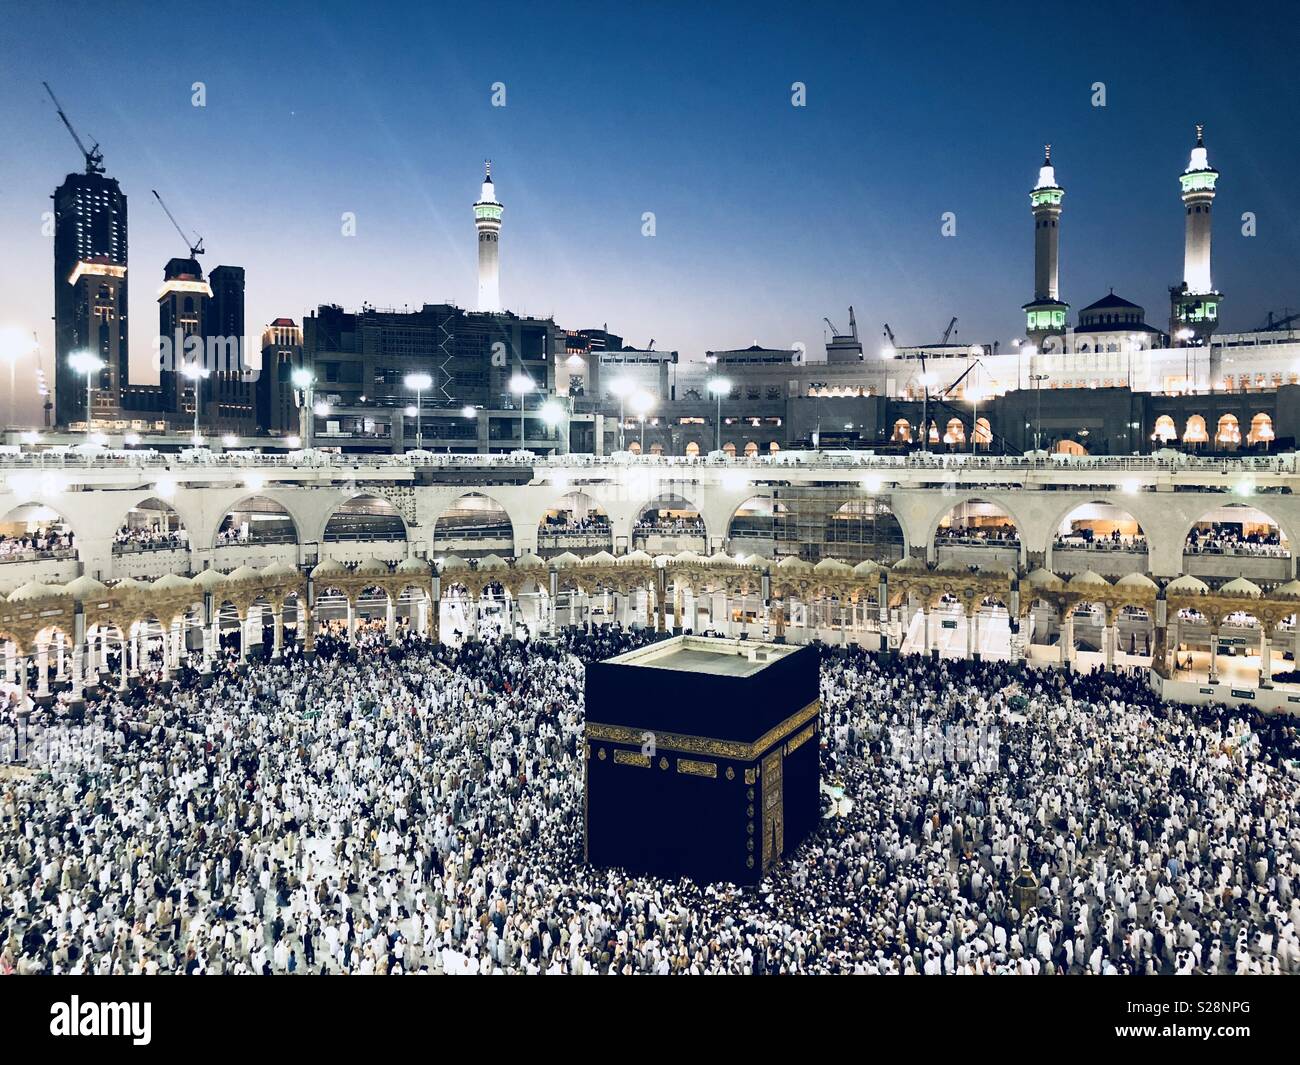 Menschen besuche masjidil haram für Wallfahrt Stockfoto